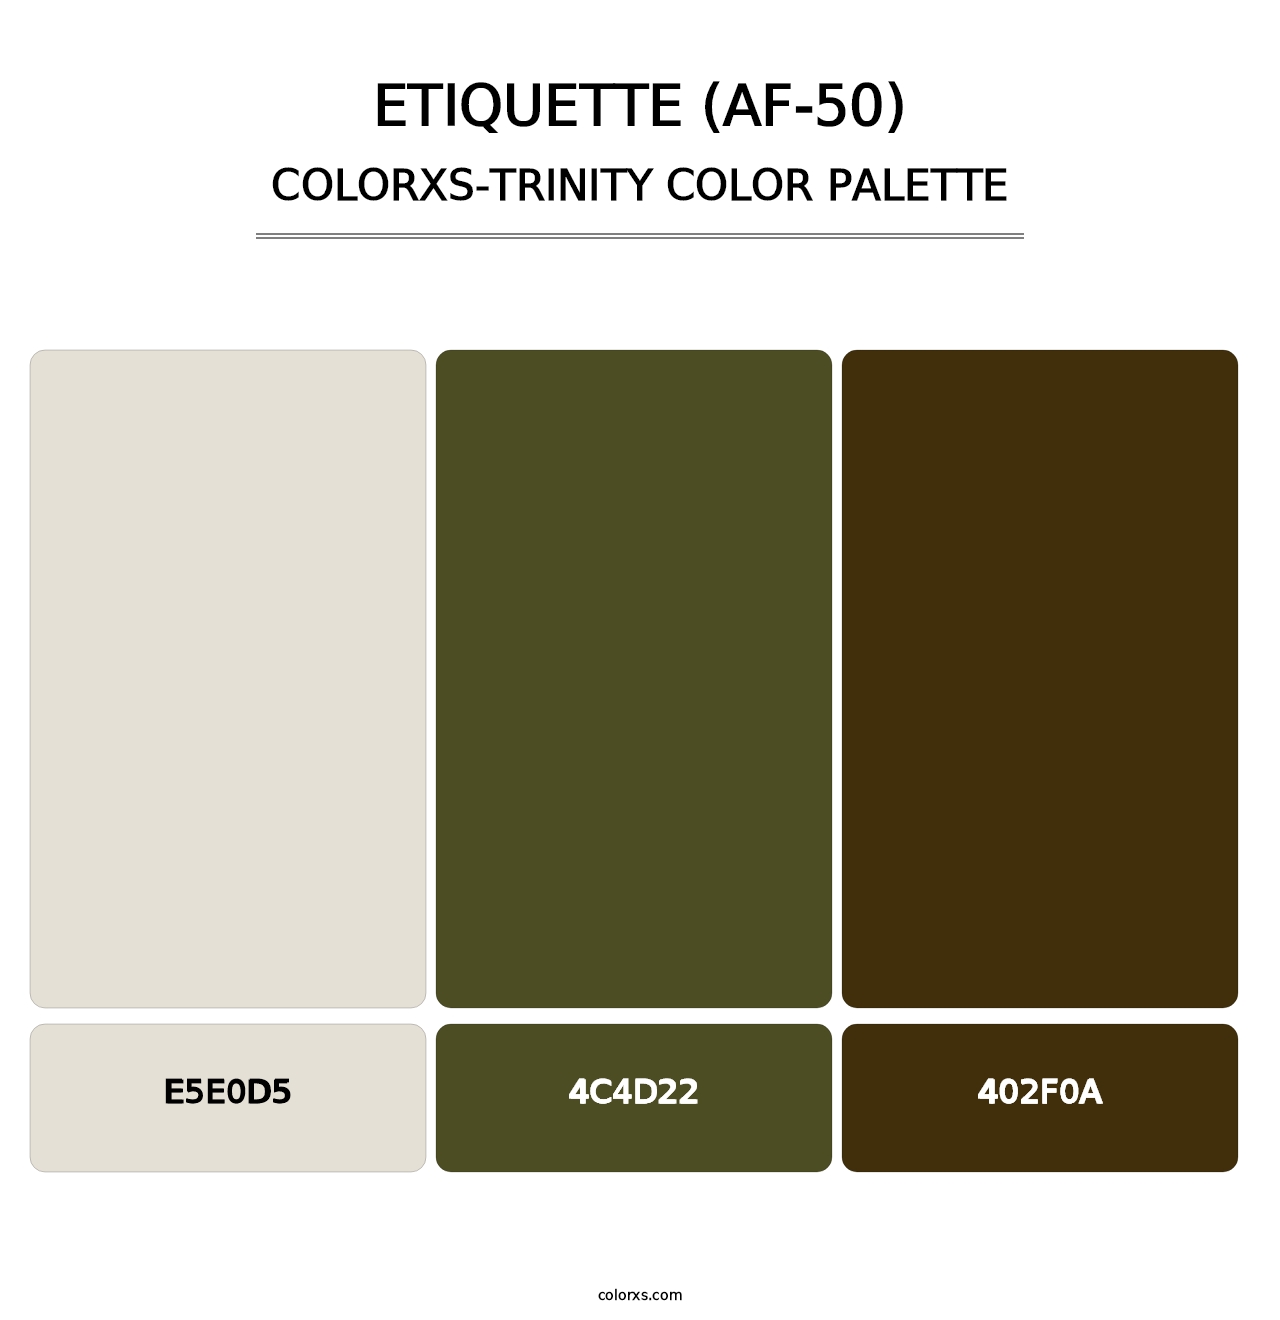 Etiquette (AF-50) - Colorxs Trinity Palette